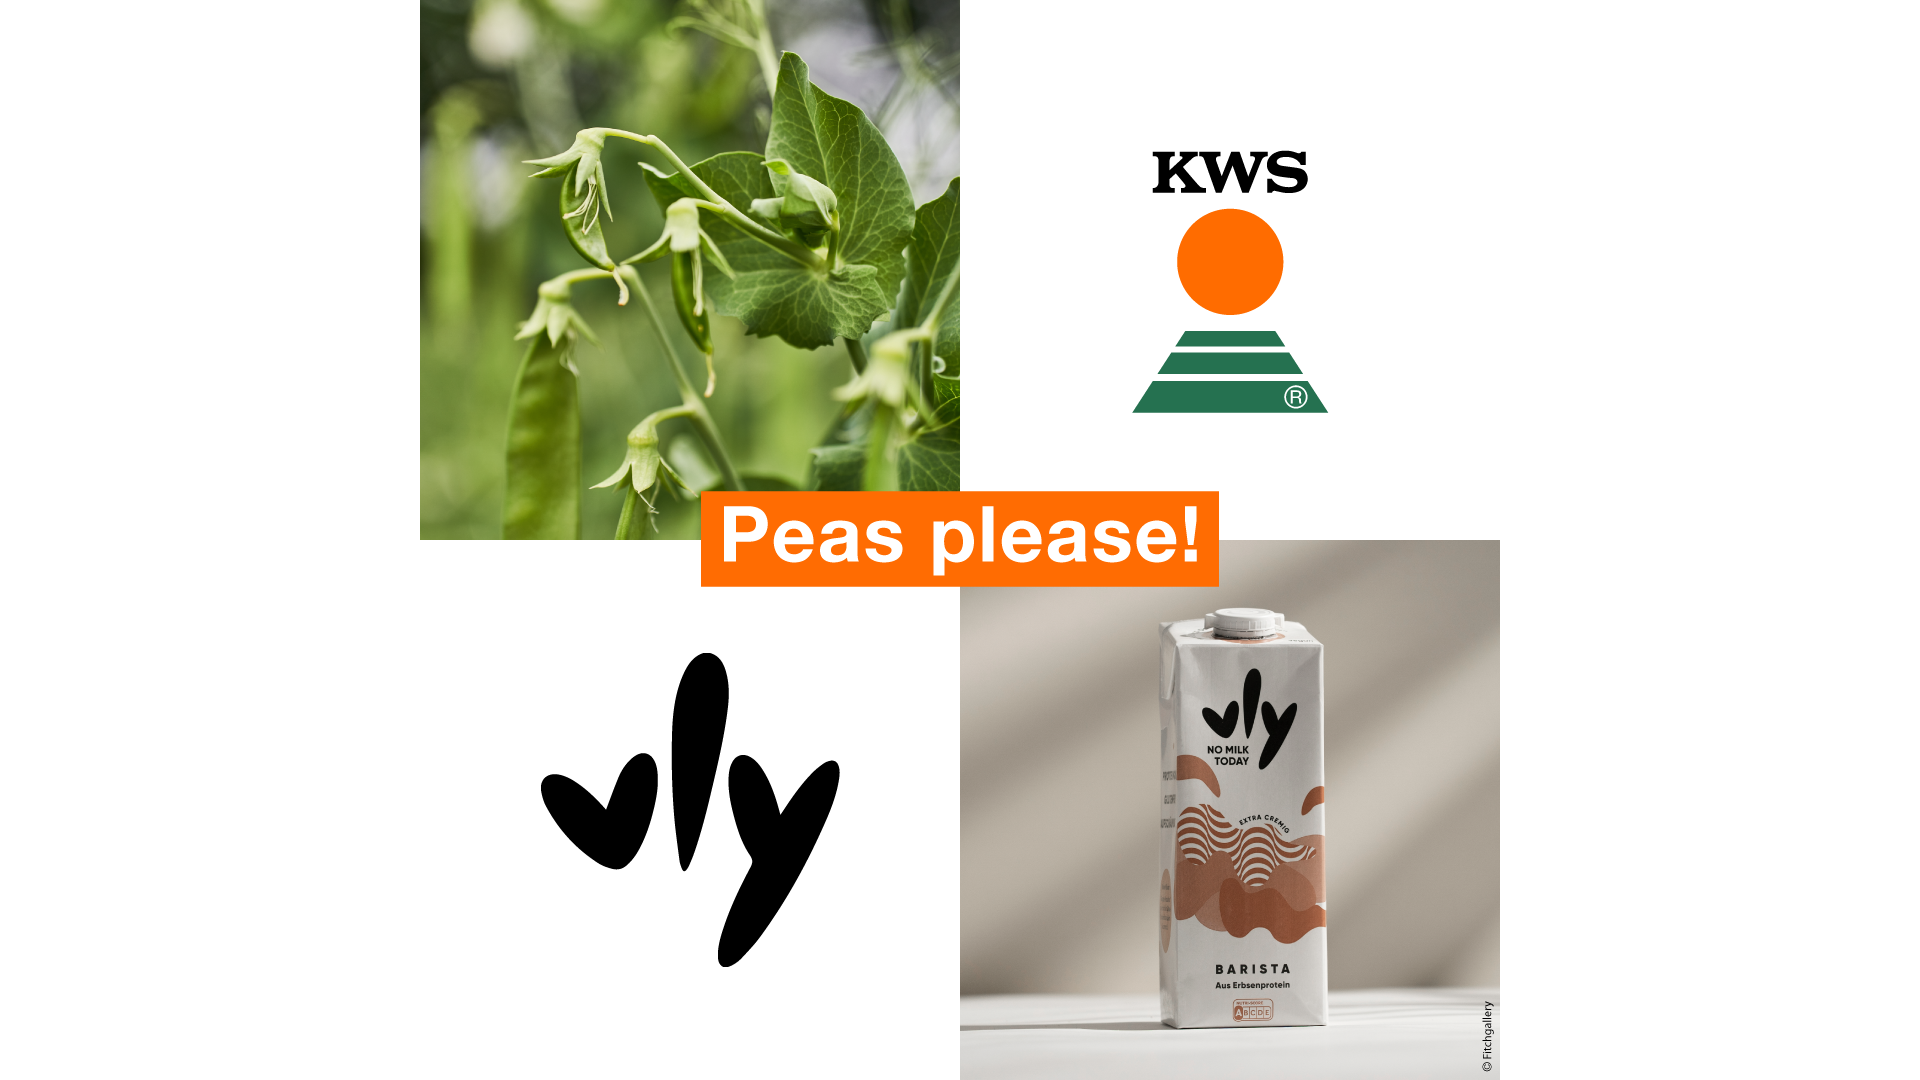 KWS nimmt Partnerschaft mit vly auf: Weiterentwicklung pflanzenbasierter Lebensmittel